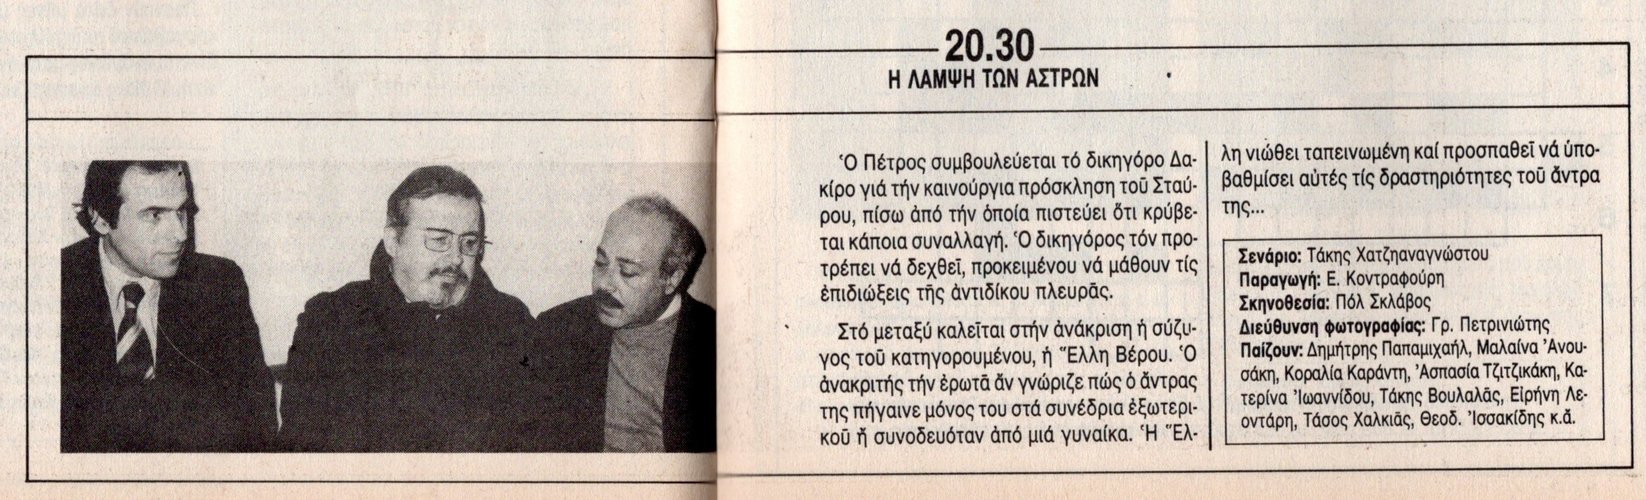 1984 03-13.jpg